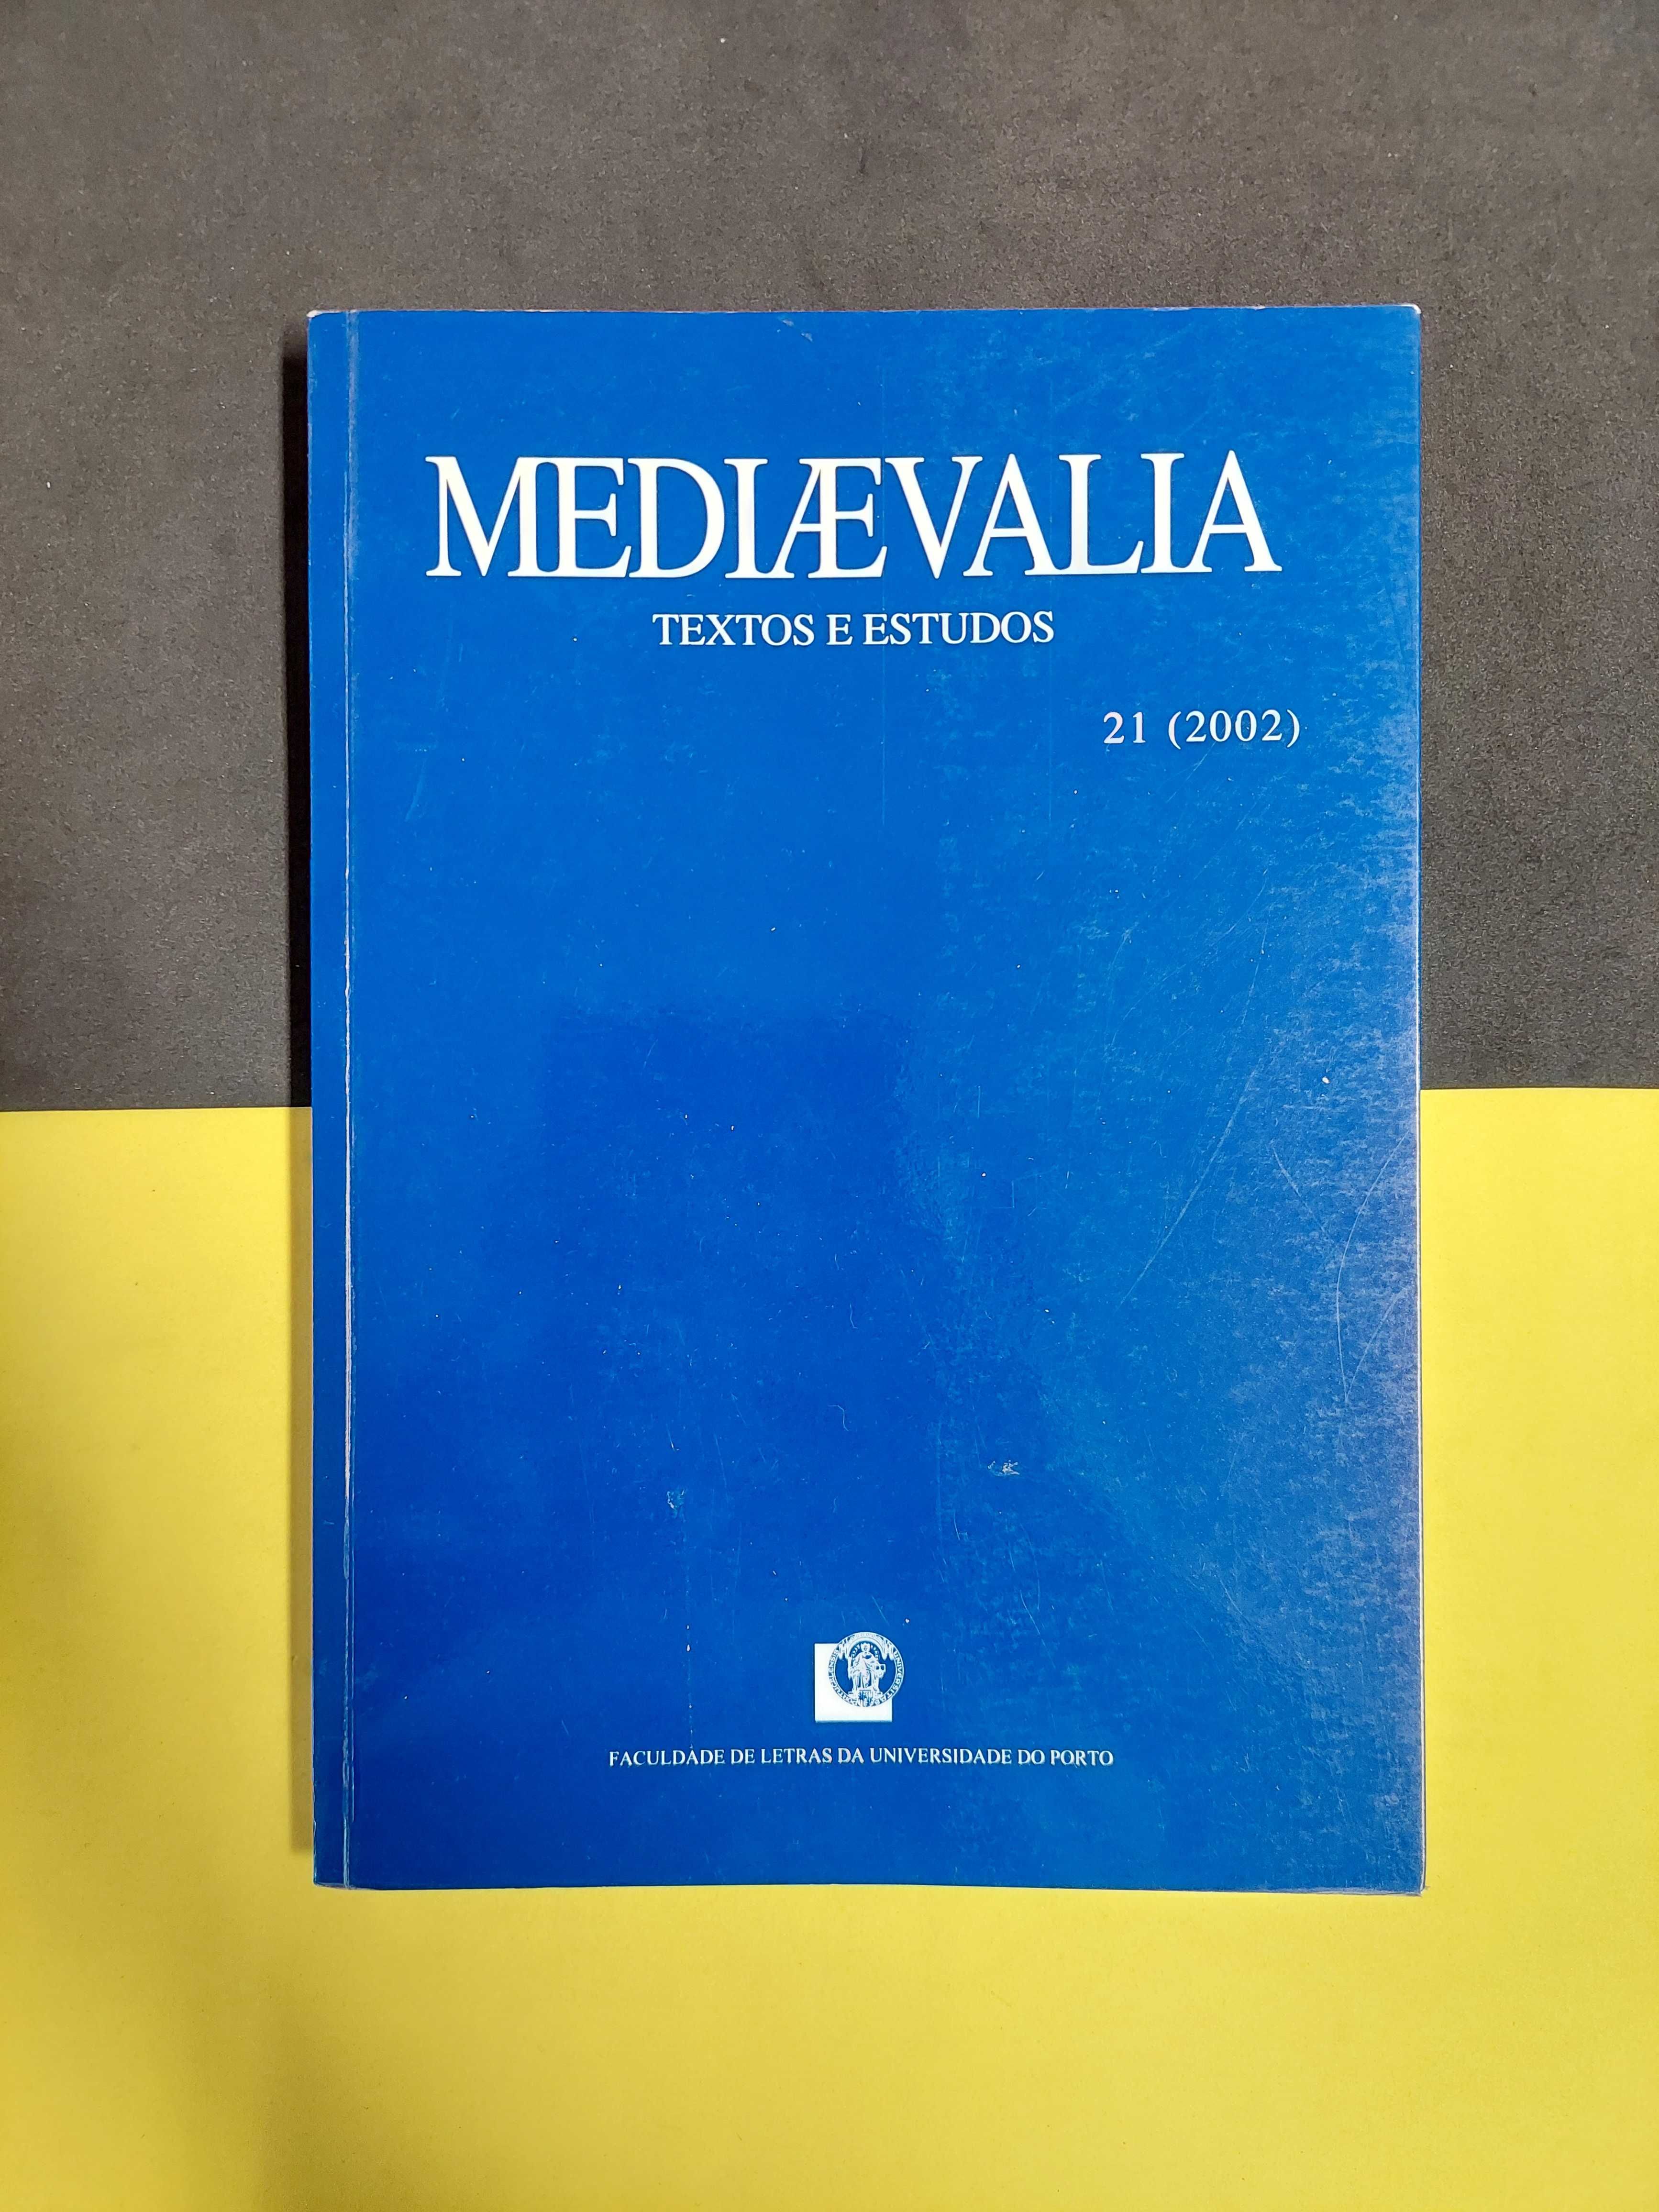 Revista Mediaevalia - Textos e estudos, 21 (2002)